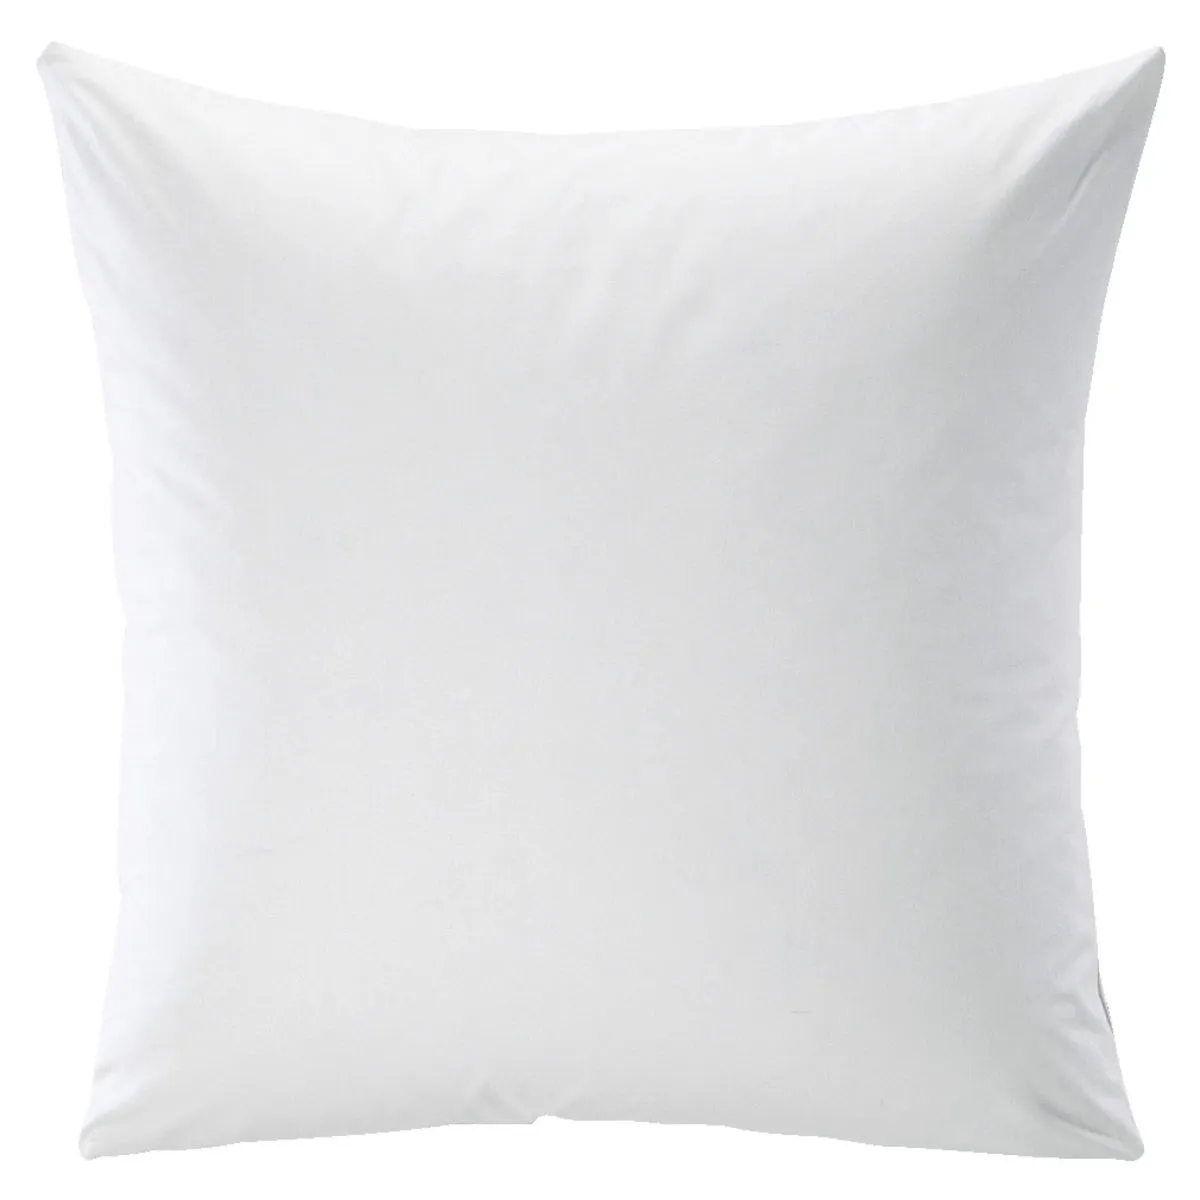 Federa cuscino Linon ; 80x80 cm (LxL); bianco; 6 pz. / confezione